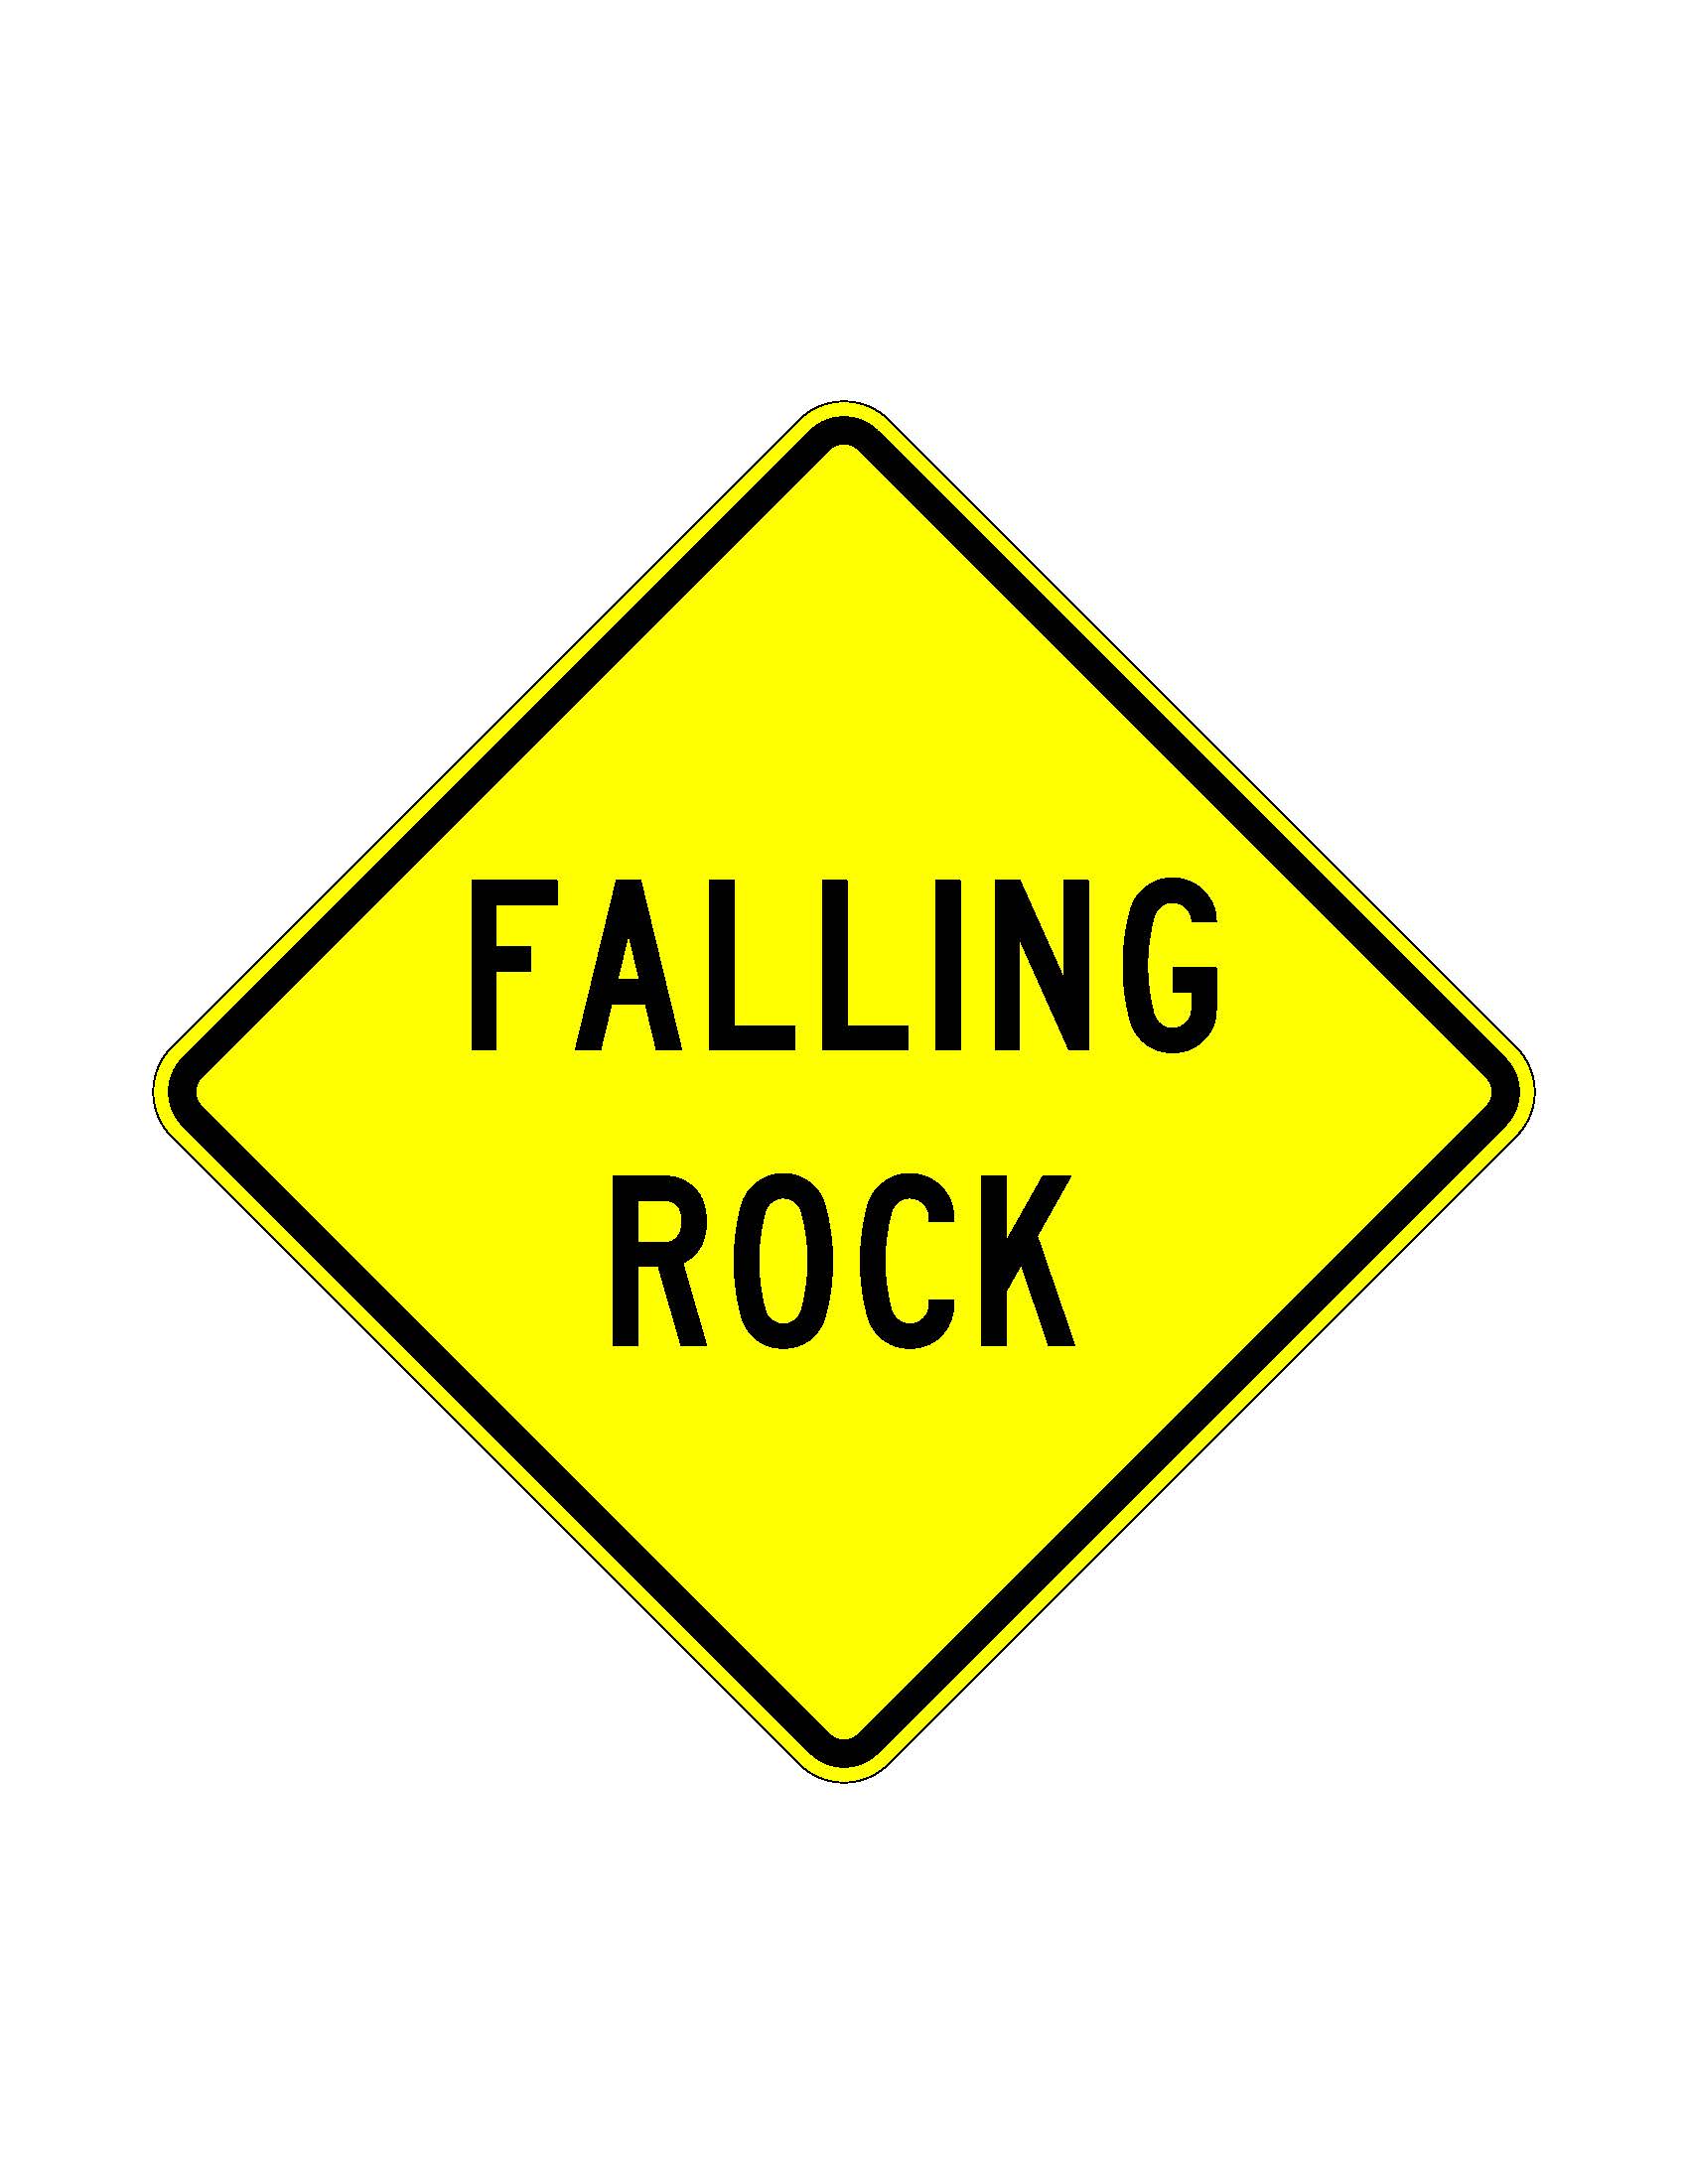 W8-52 Falling Rock JPEG detail image